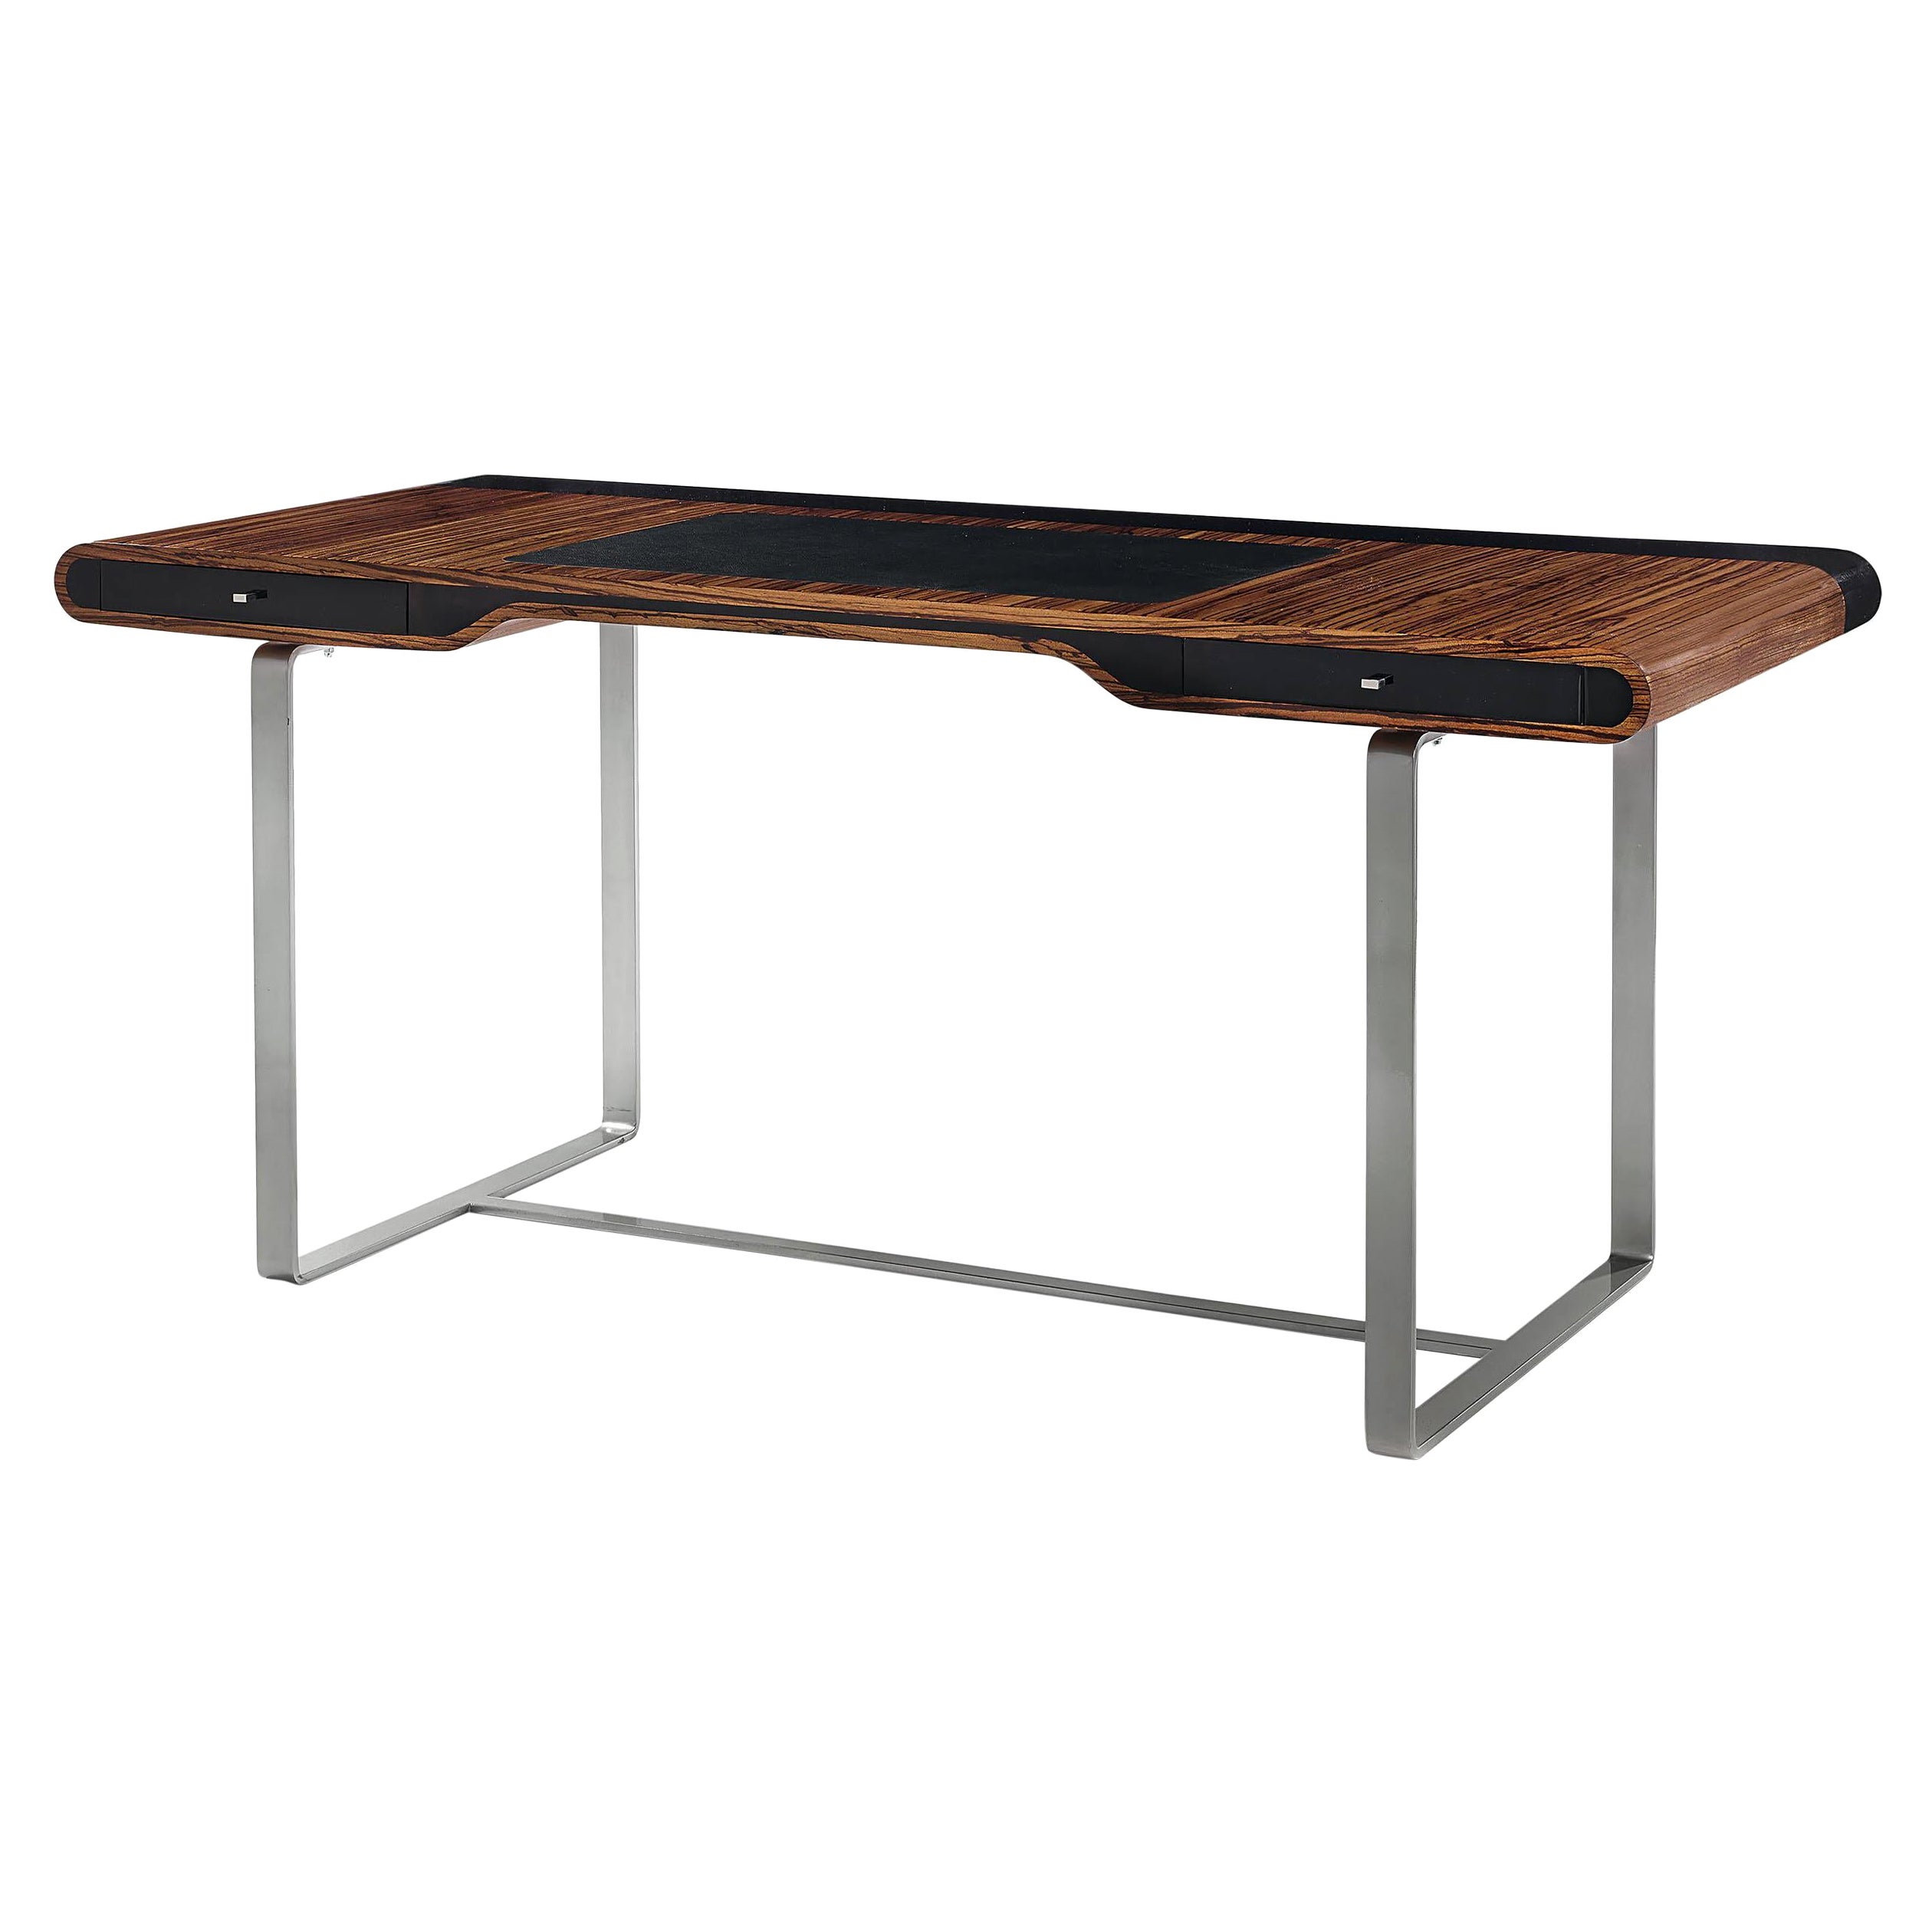 Kleiner Shanghai-Schreibtisch aus Zebrano-Holz und schwarzem, silberfarbenem Sycomore-Bein